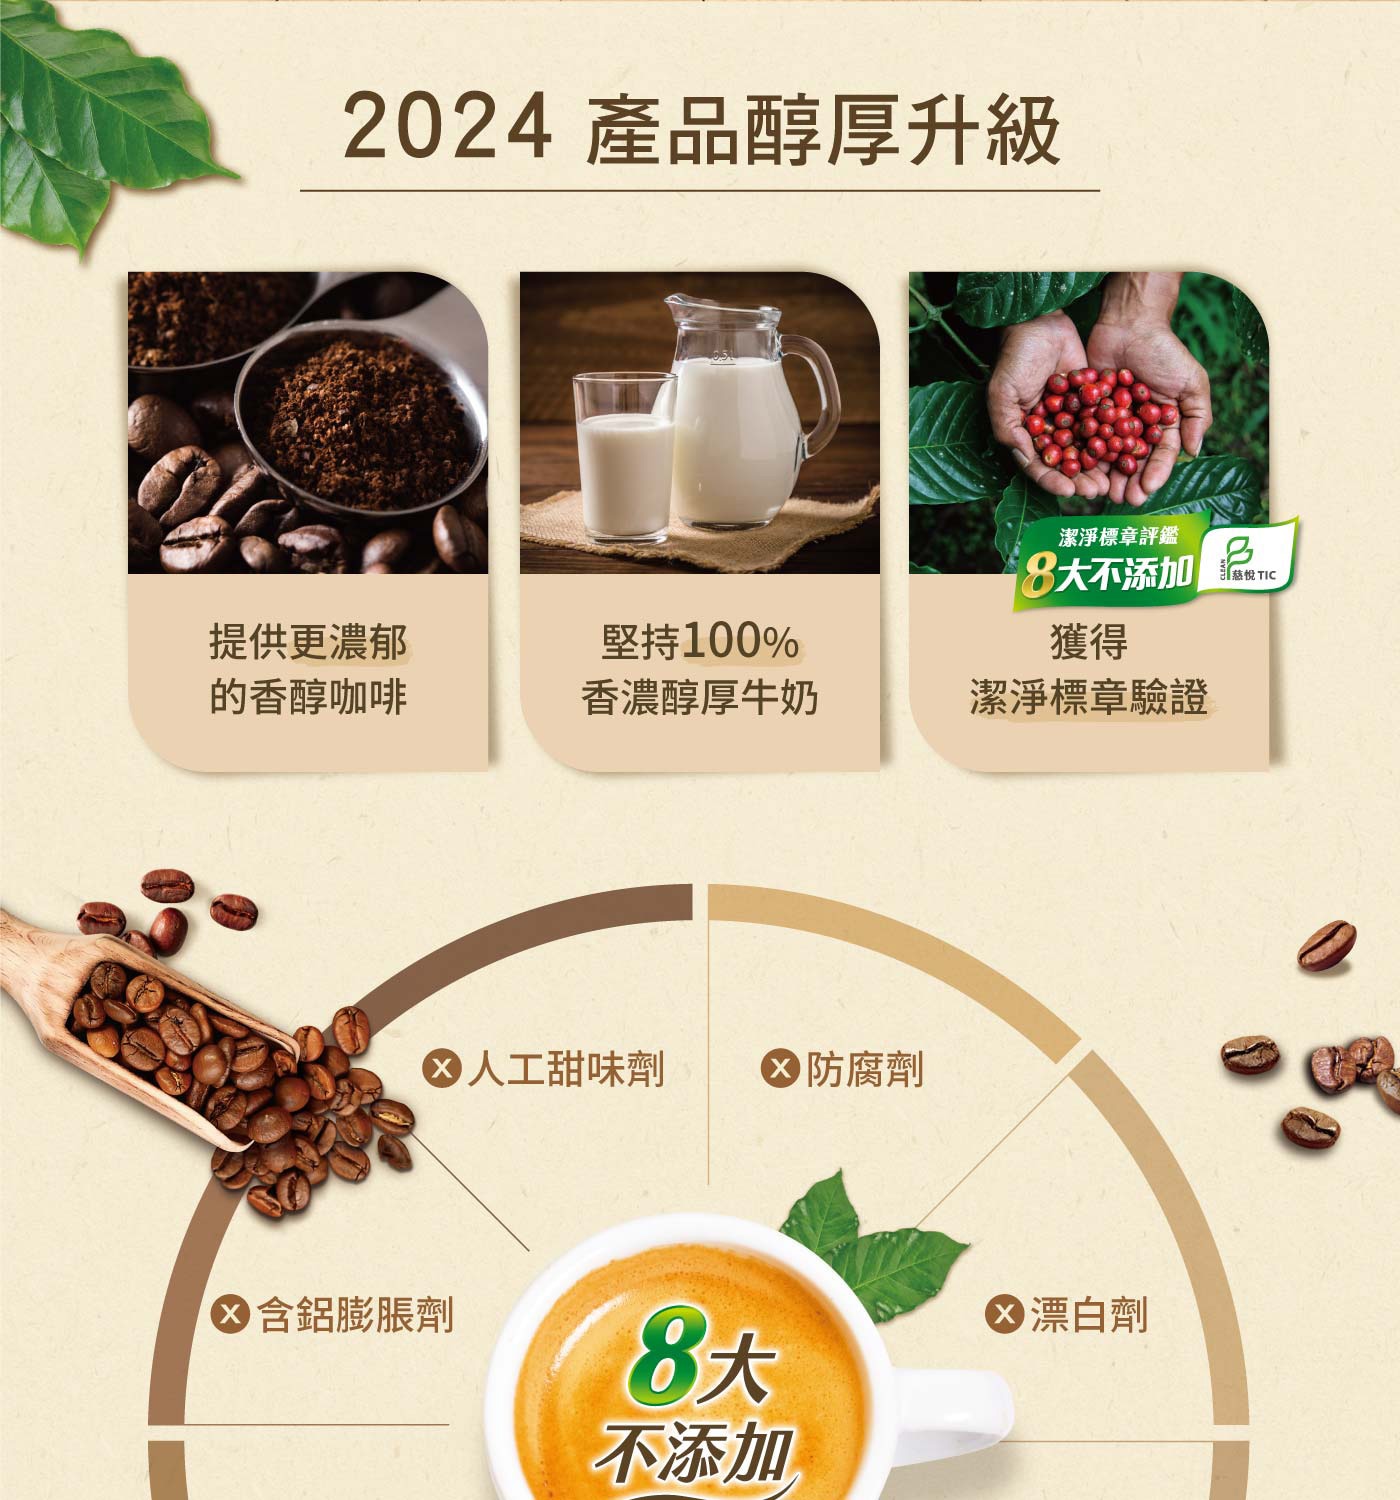 雀巢咖啡 二合一純拿鐵  產品醇厚升級 獲得潔淨標章驗證 堅持100%醇厚牛奶 提供更濃郁的香醇咖啡